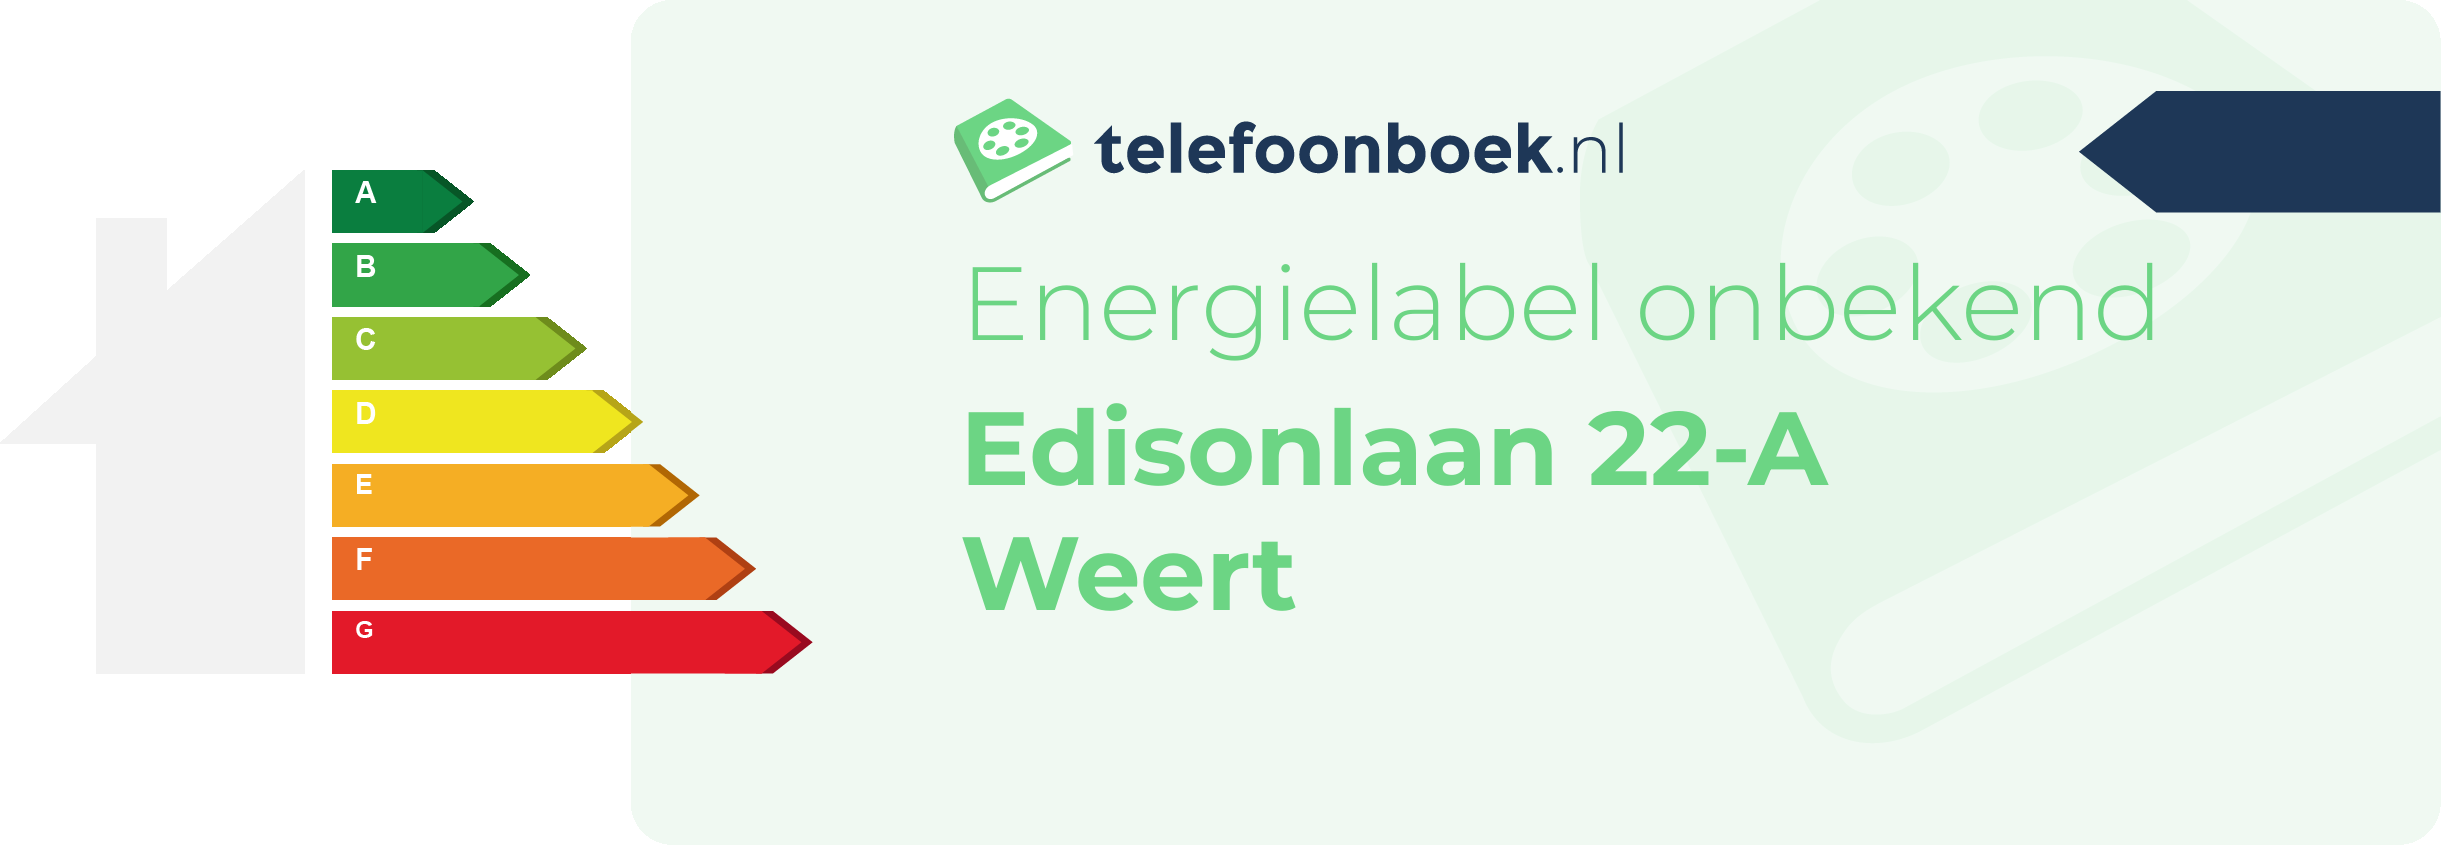 Energielabel Edisonlaan 22-A Weert